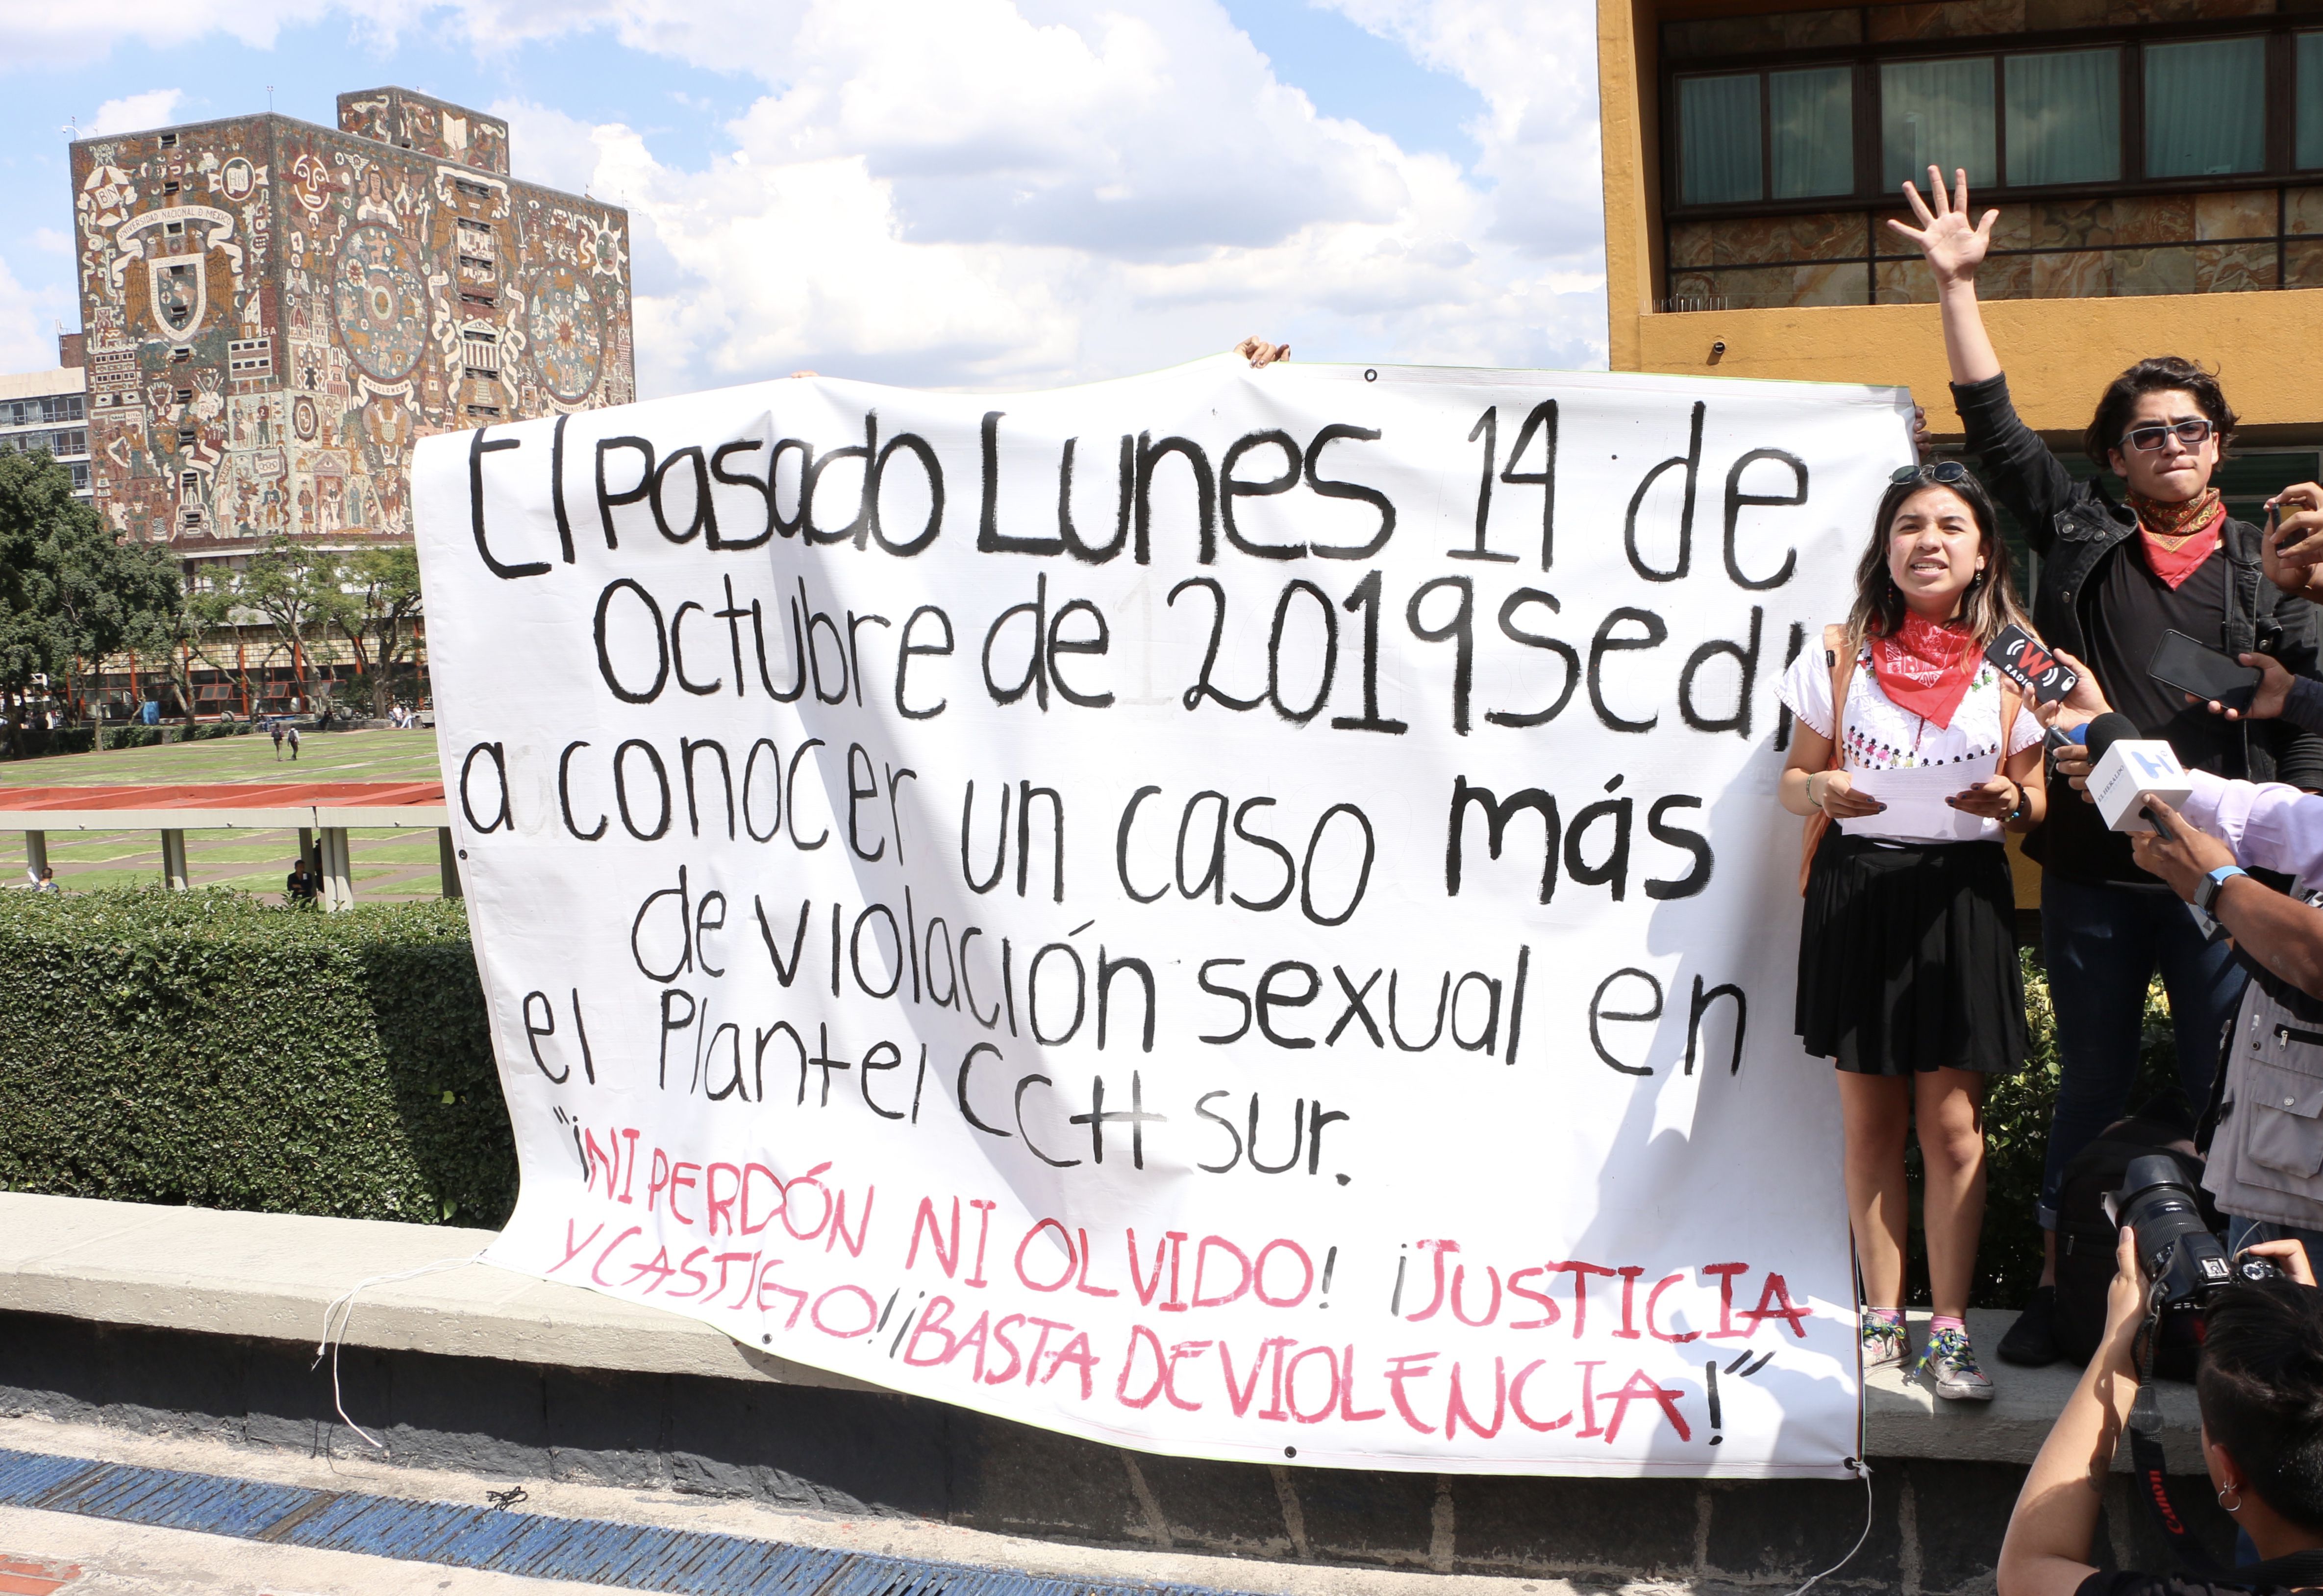 Las manifestaciones en contra de la violencia de género en la UNAM han sido numerosas y llamativas. (Foto: Archivo)